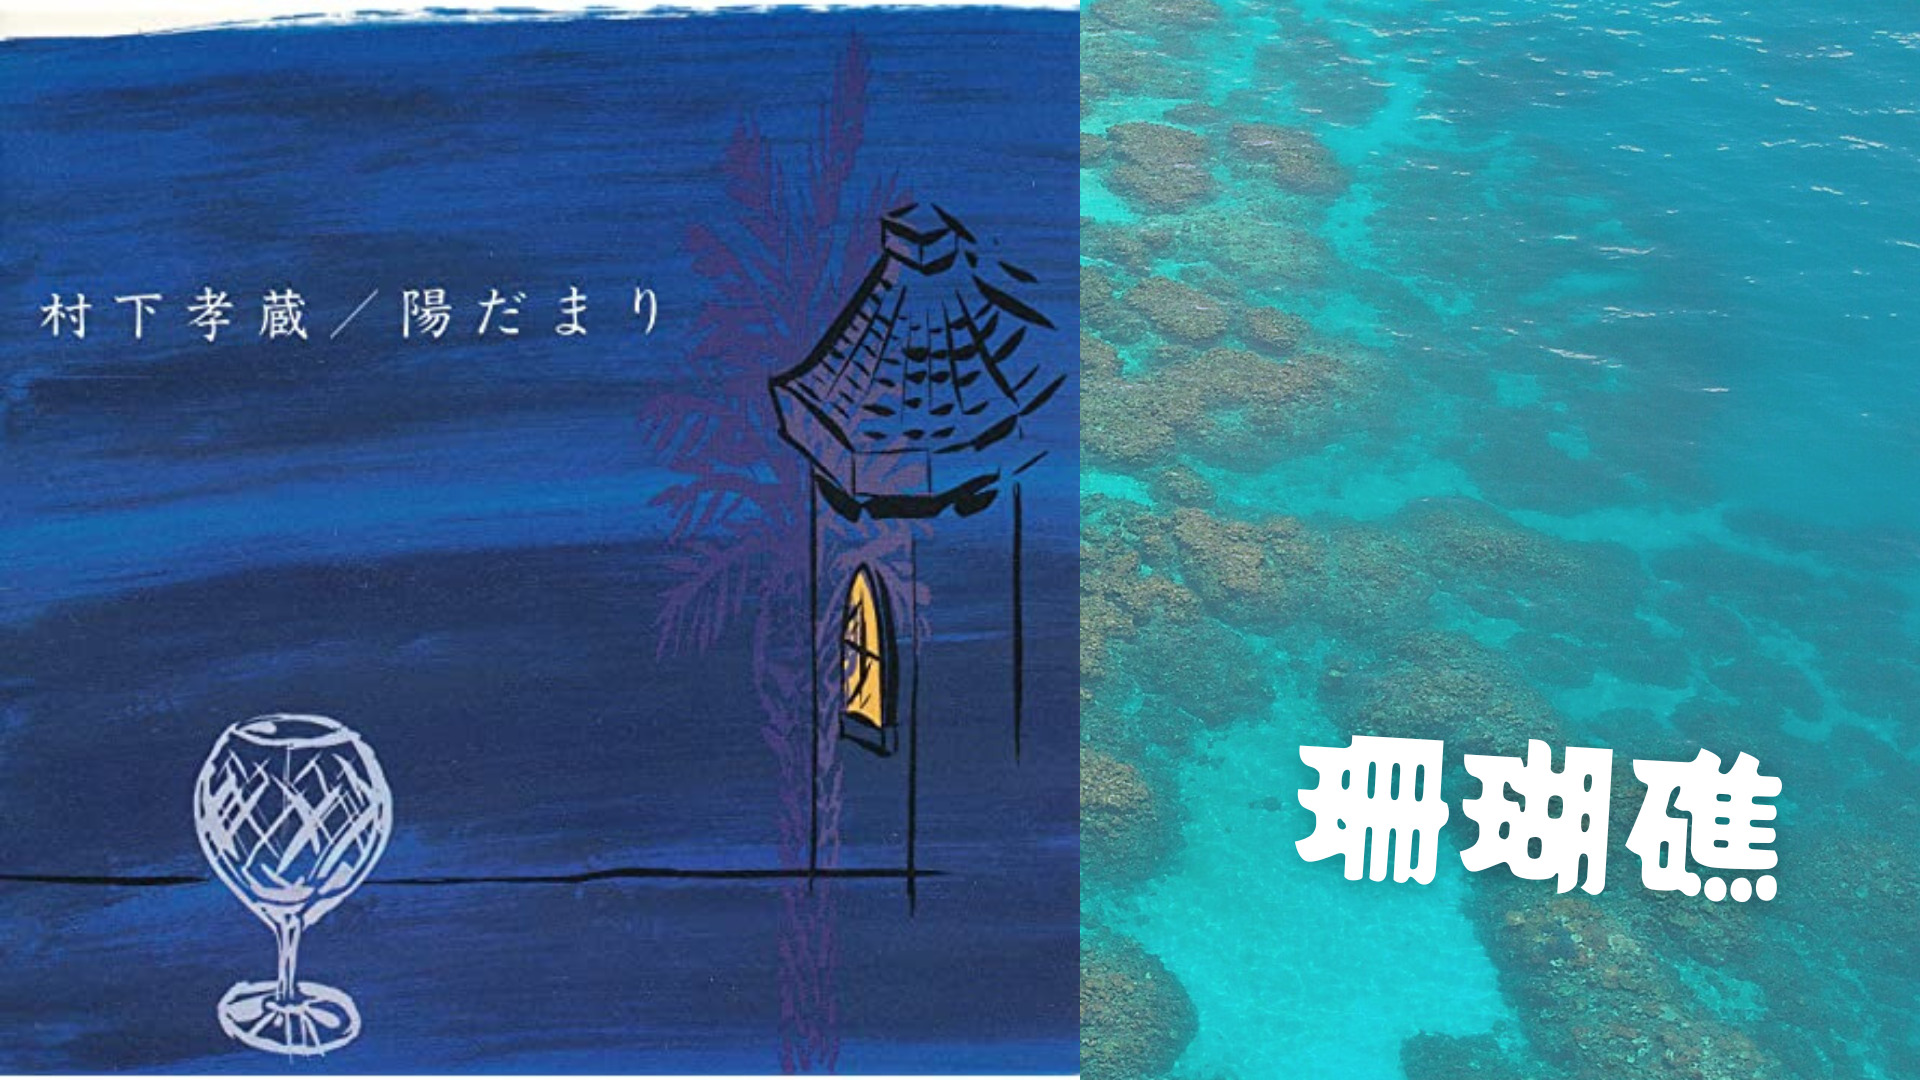 【第四位】村下孝蔵さんの「珊瑚礁」に深く眠る愛を求めて。歌詞の意味や世界観を解説・鑑賞